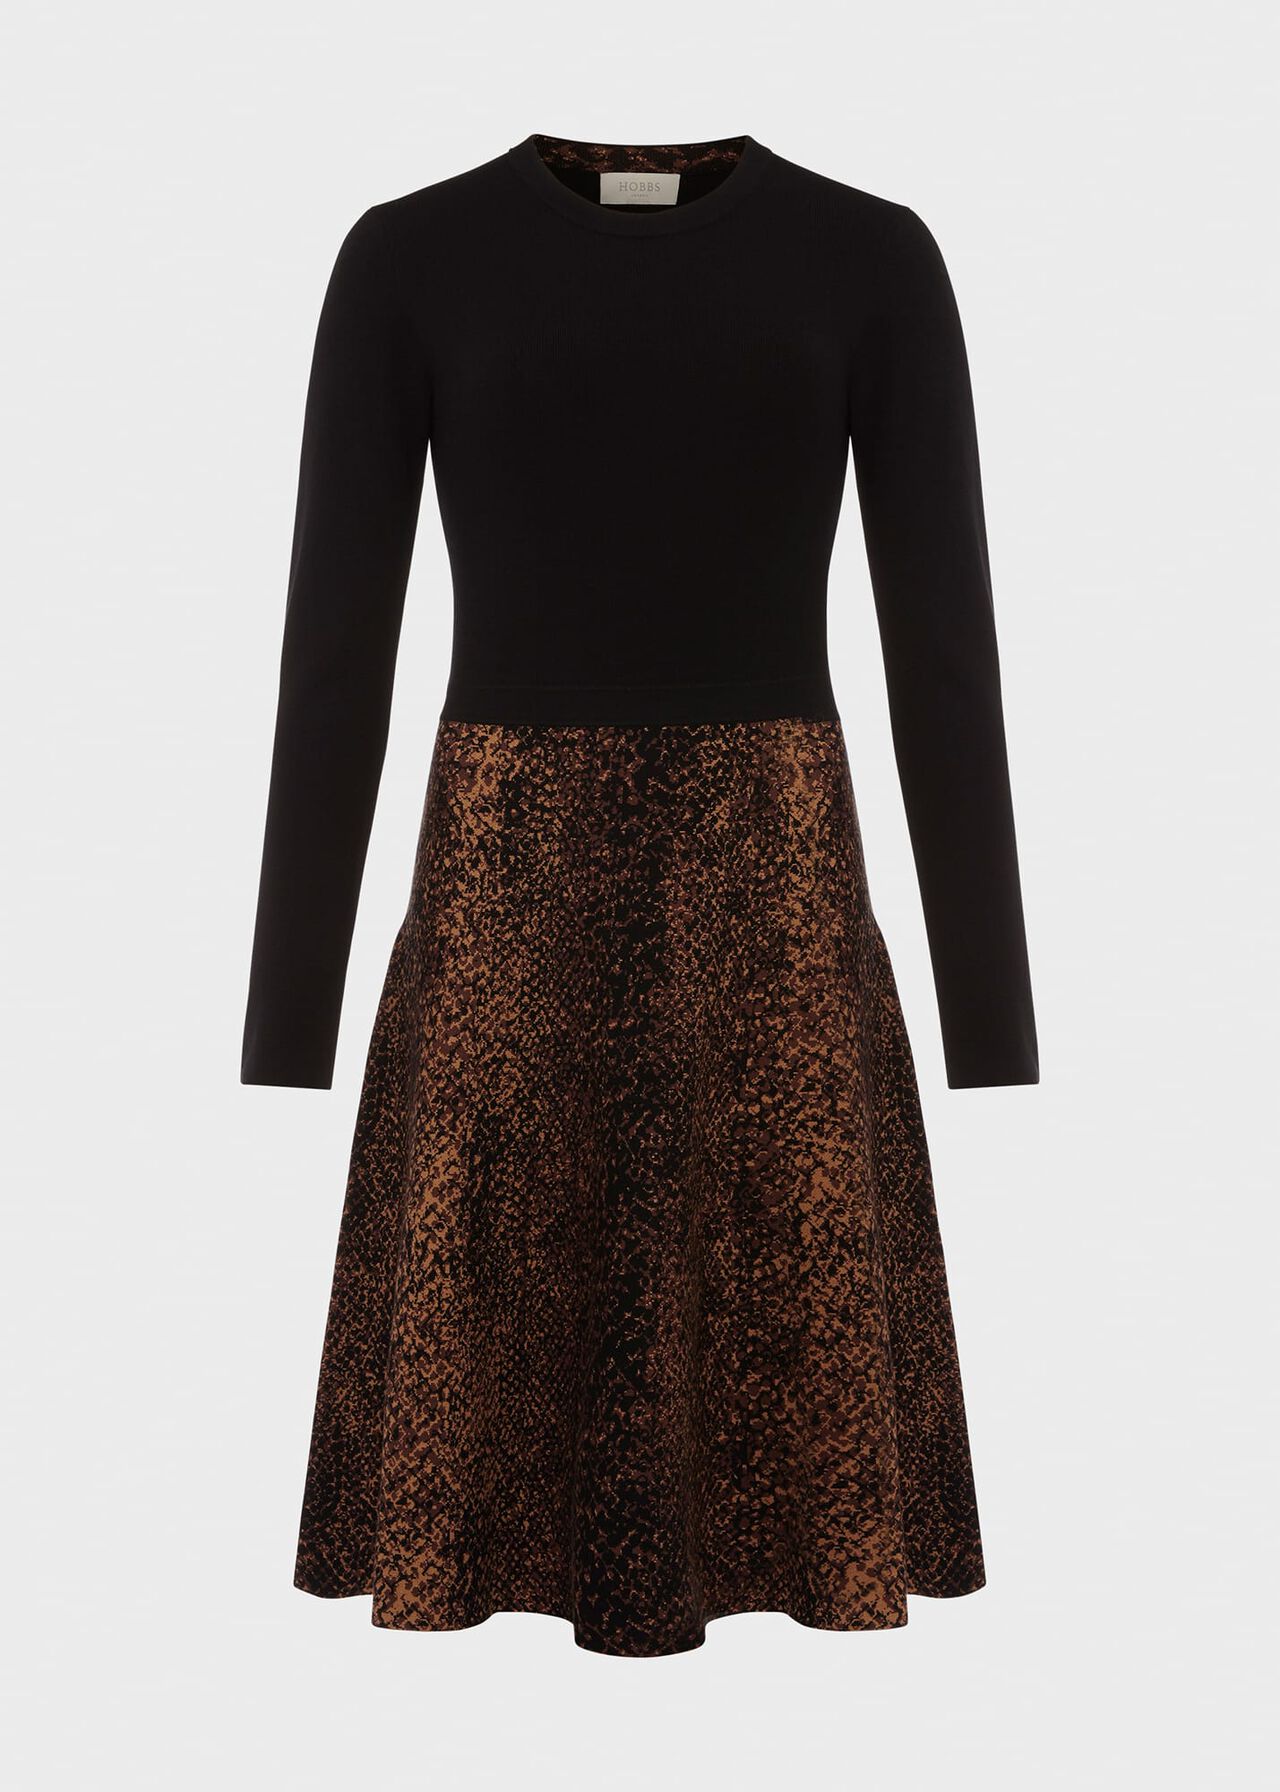 Hallie Knitted Dress, Black Brown, hi-res